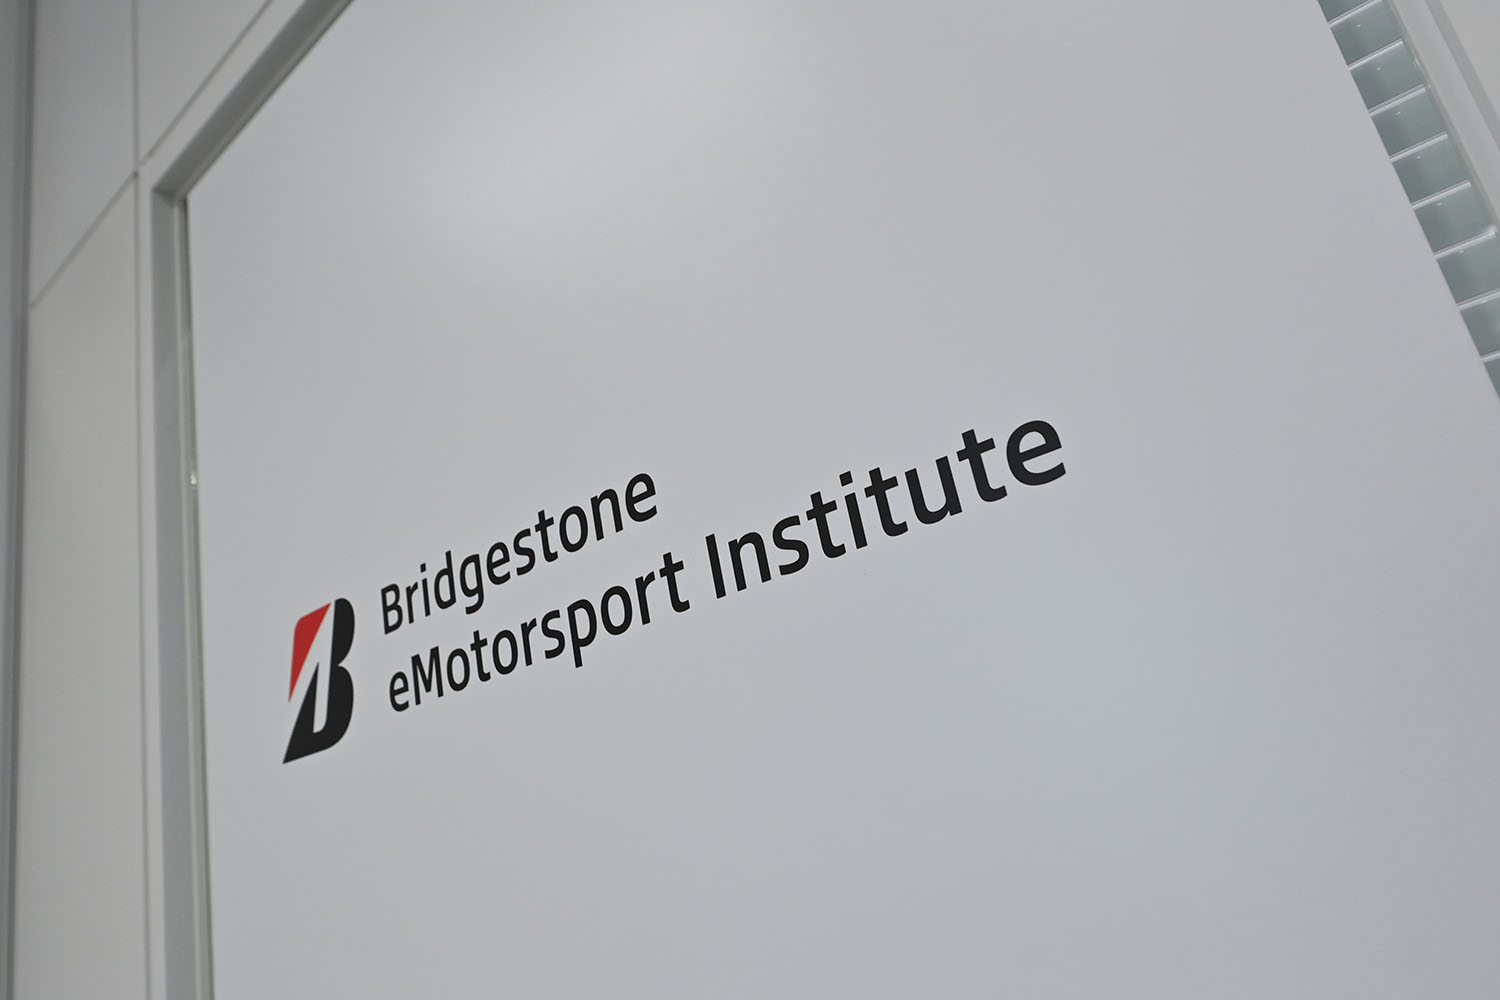 Bridgestone eMotorsport Instituteの看板 〜 画像17